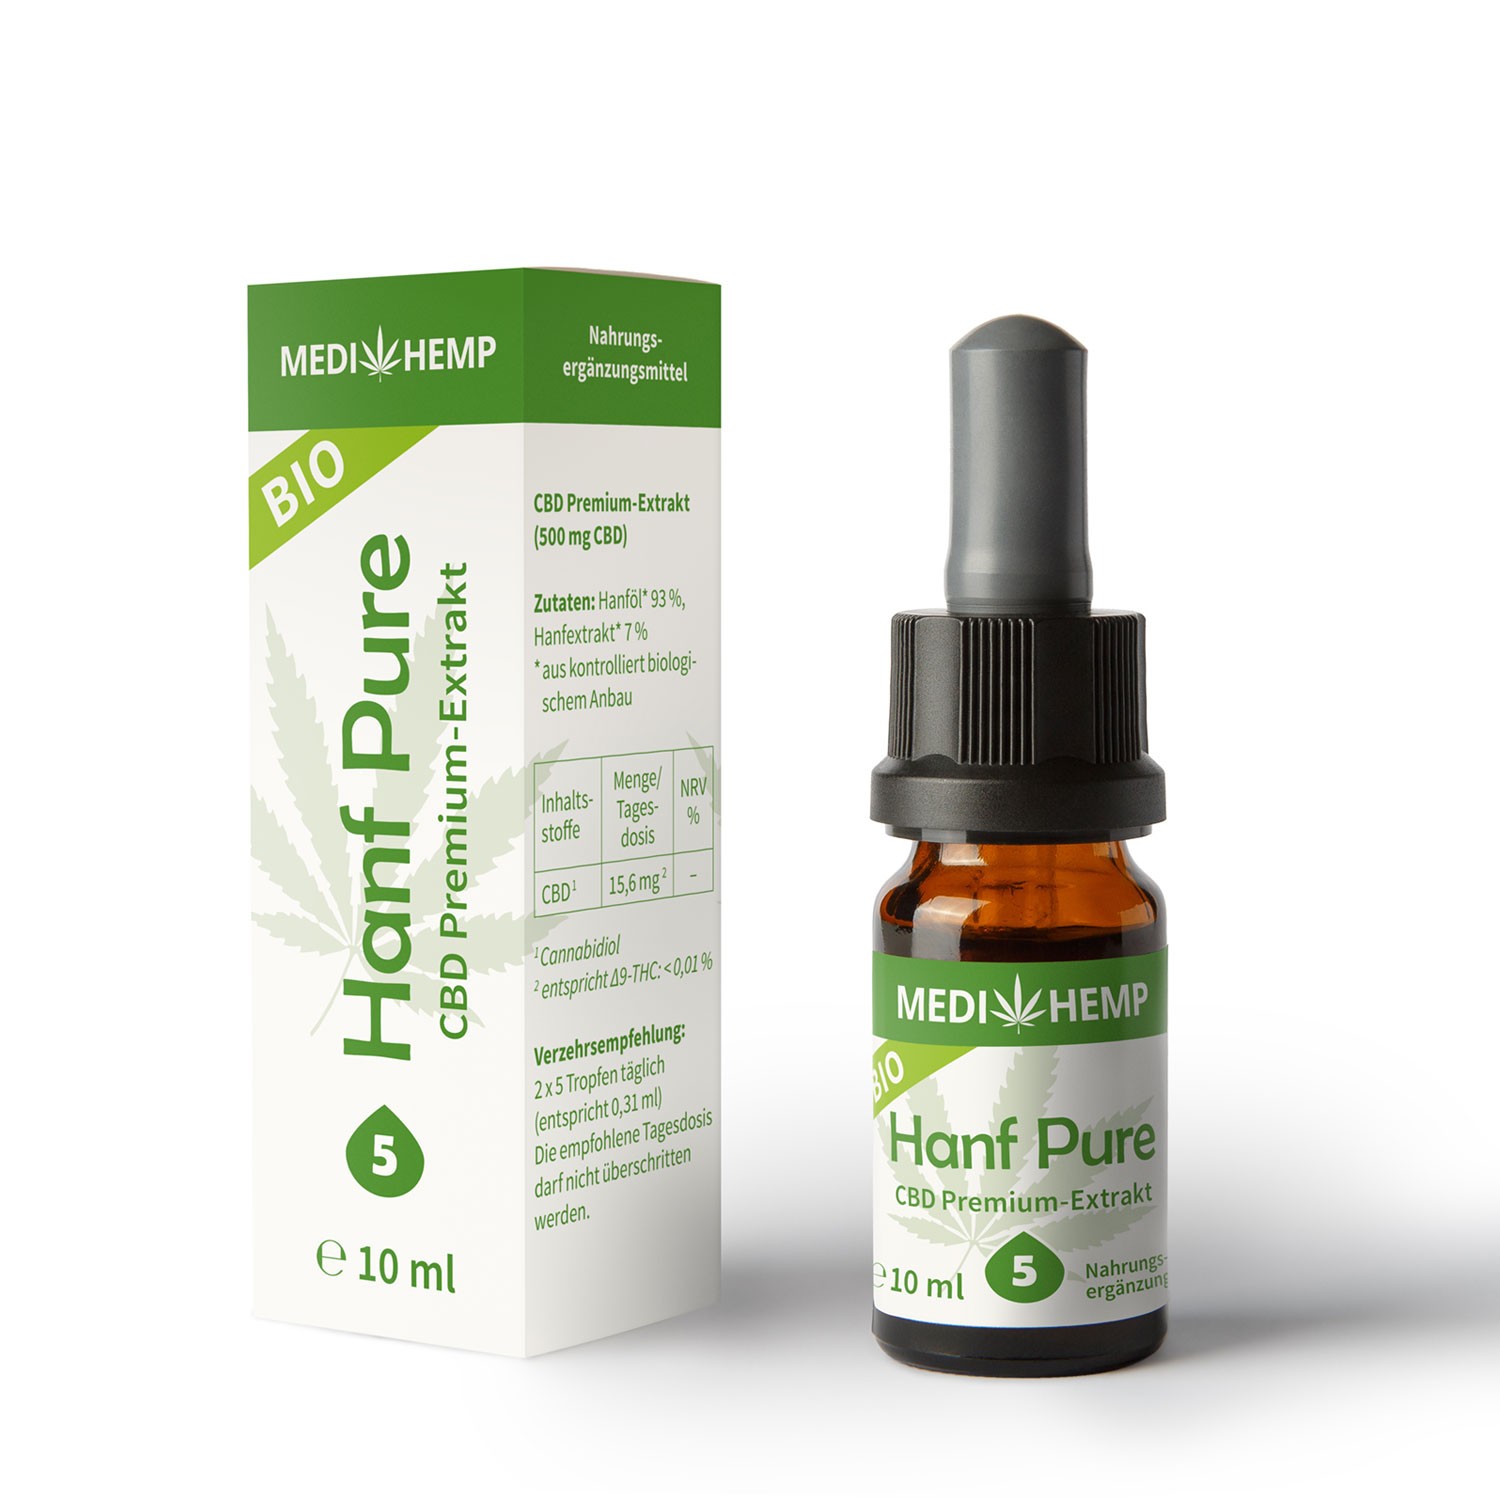 Medihemp Bio Hanf Pure Öl - 5 % -  10ml - 500 mg CBD Aromaöl